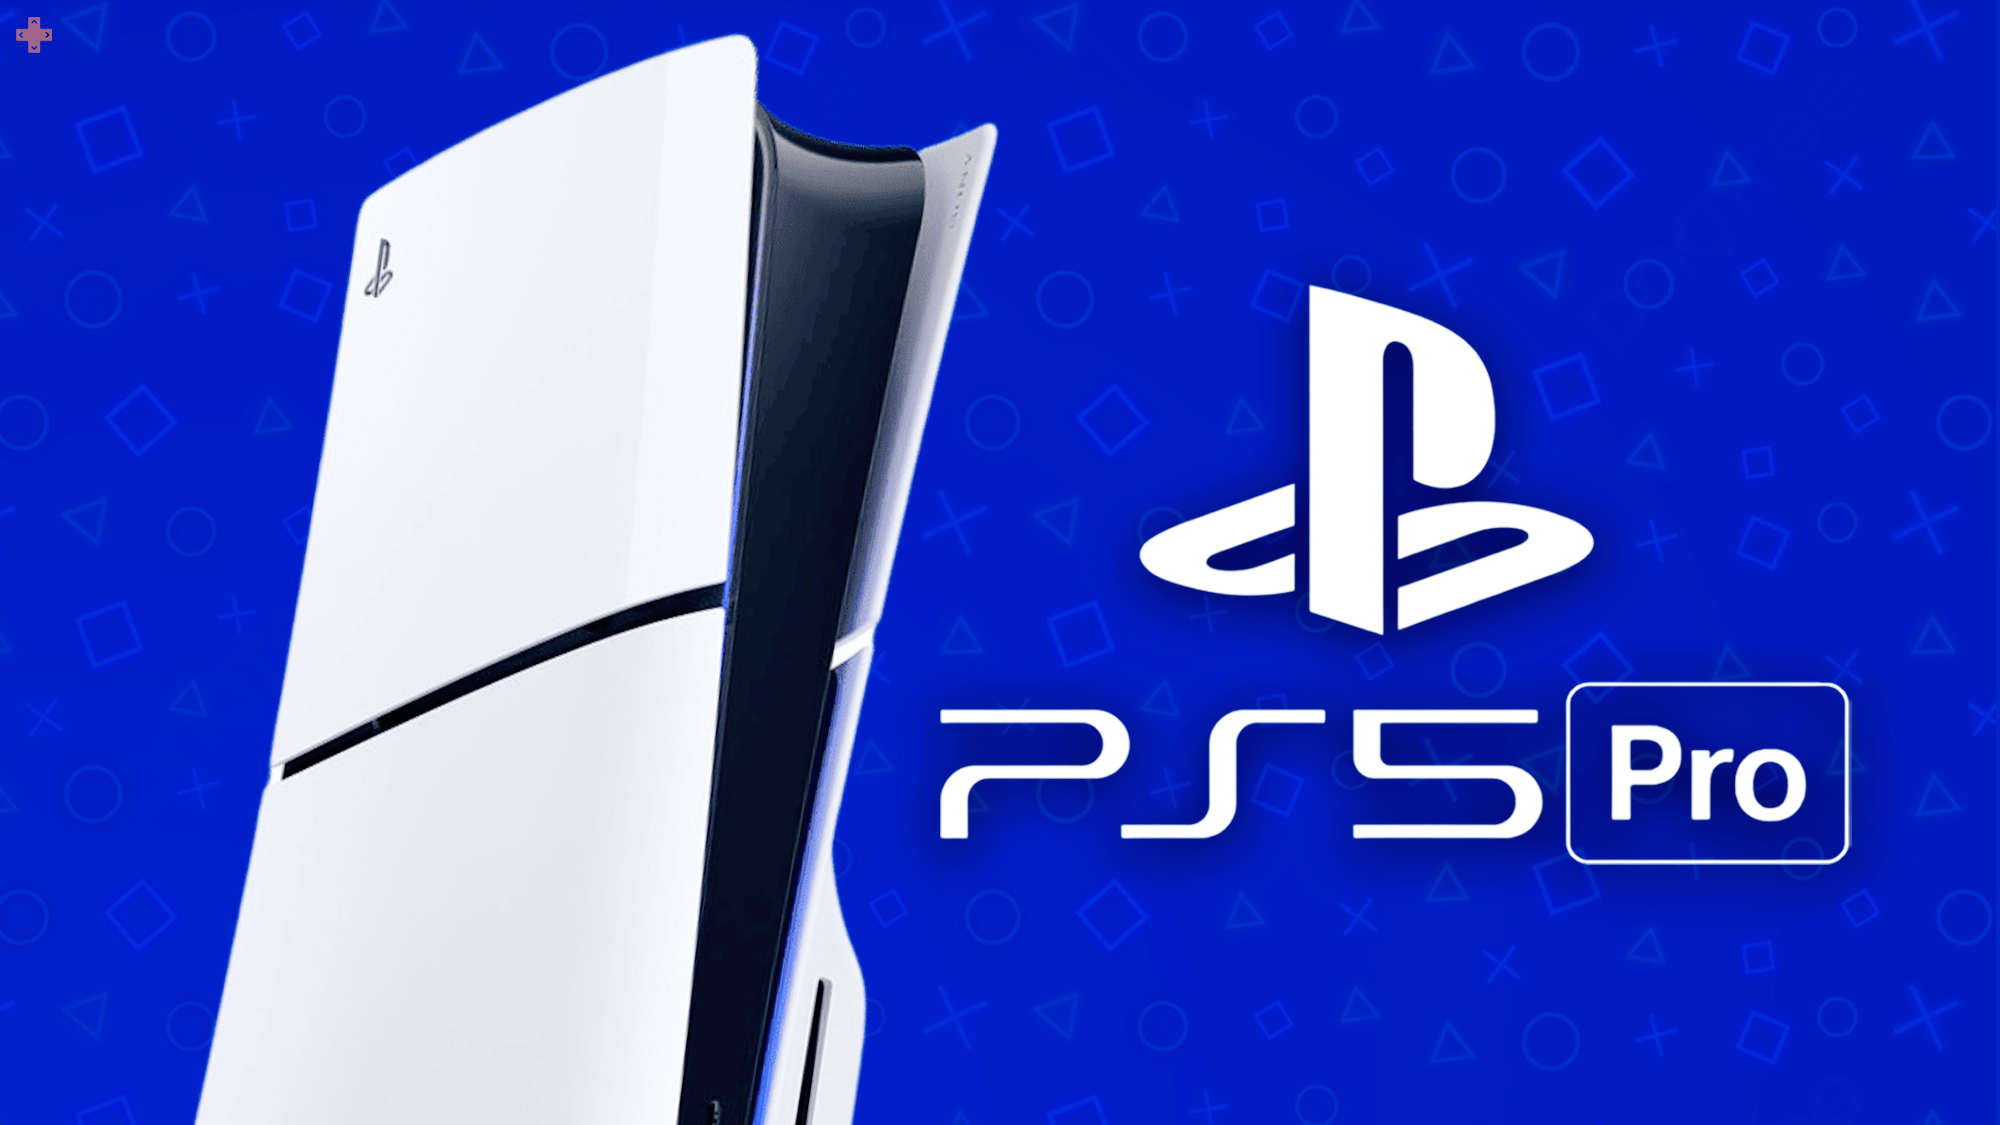 PS5 Pro : Sony confirme tout sans le vouloir, plus de place au doute !